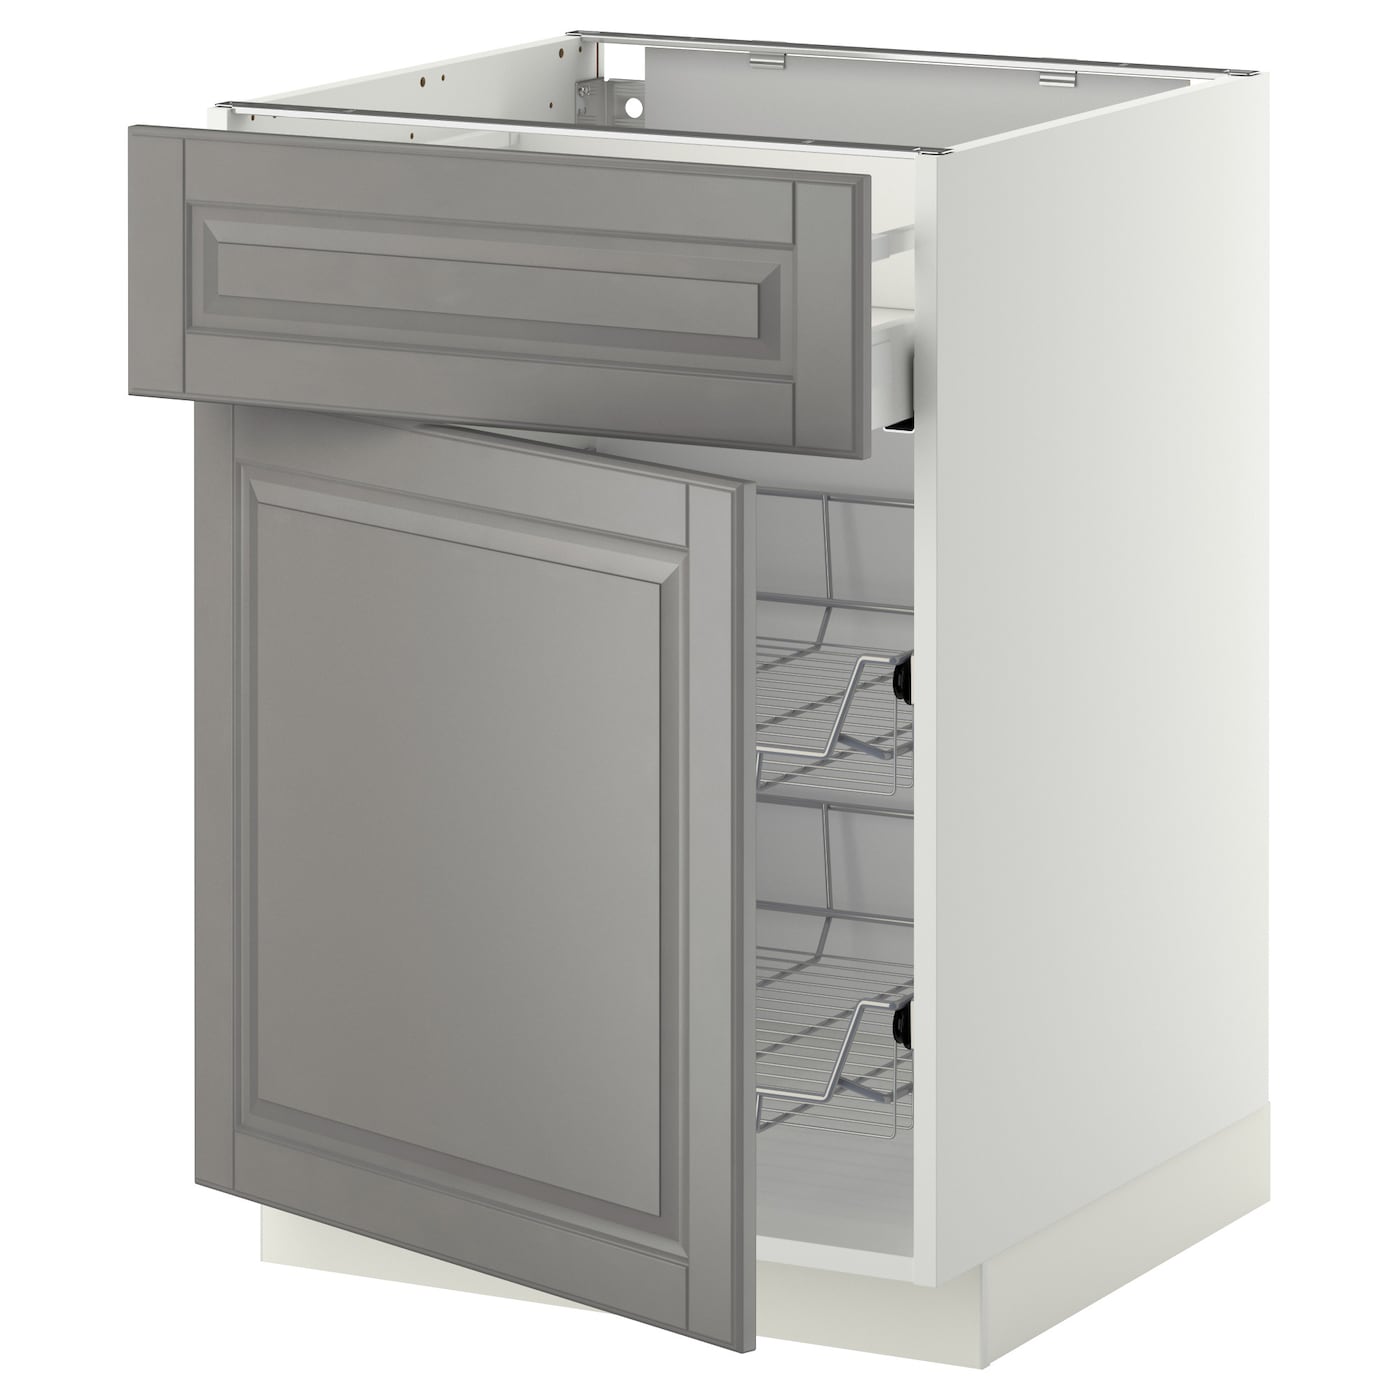 Напольный кухонный шкаф  - IKEA METOD MAXIMERA, 88x62x60см, белый/серый, МЕТОД МАКСИМЕРА ИКЕА